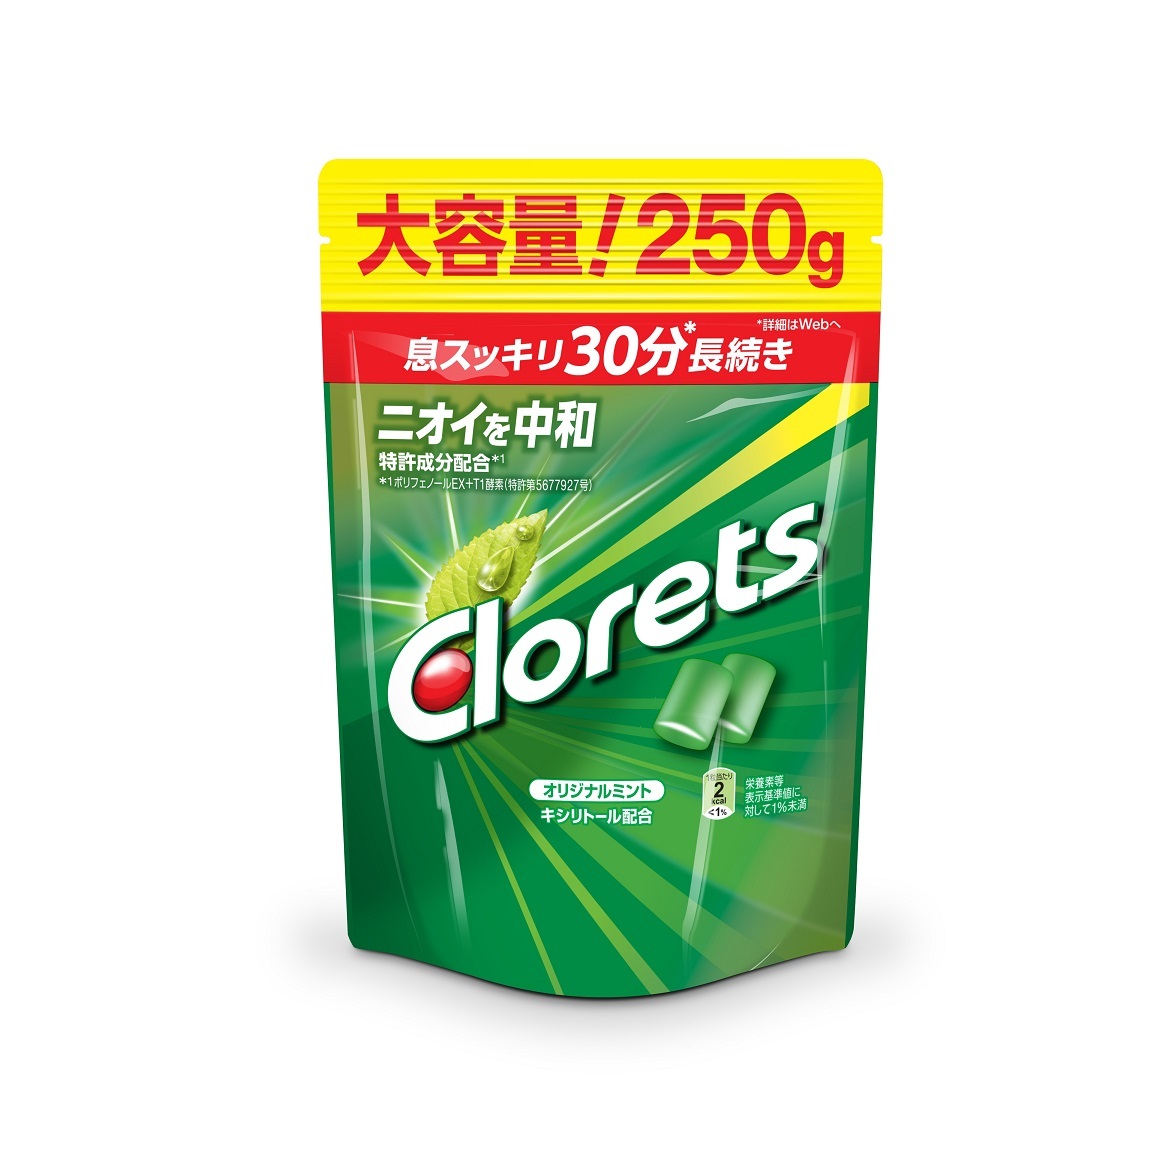 Clorets クロレッツ XP オリジナルミント スタンドパウチ 粒 250g×6袋 ガムの商品画像